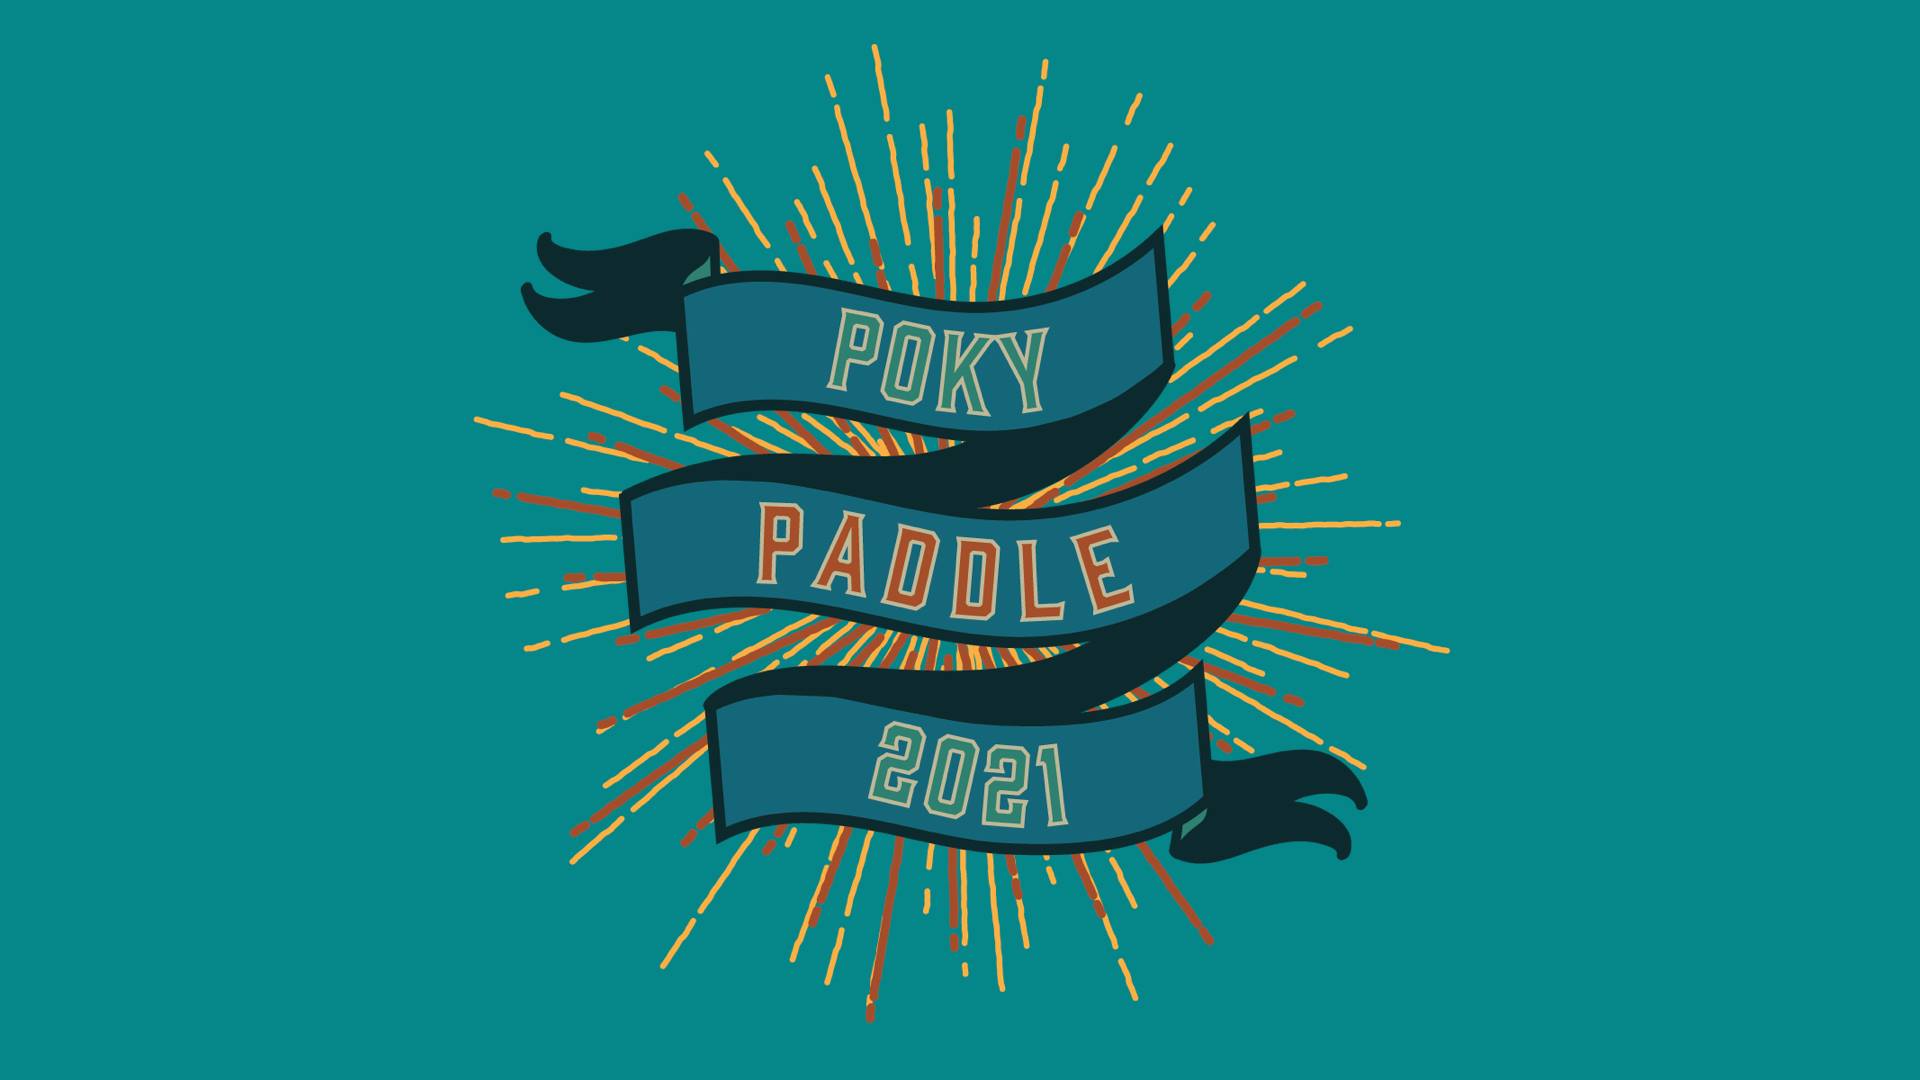 Poky Paddle 2021